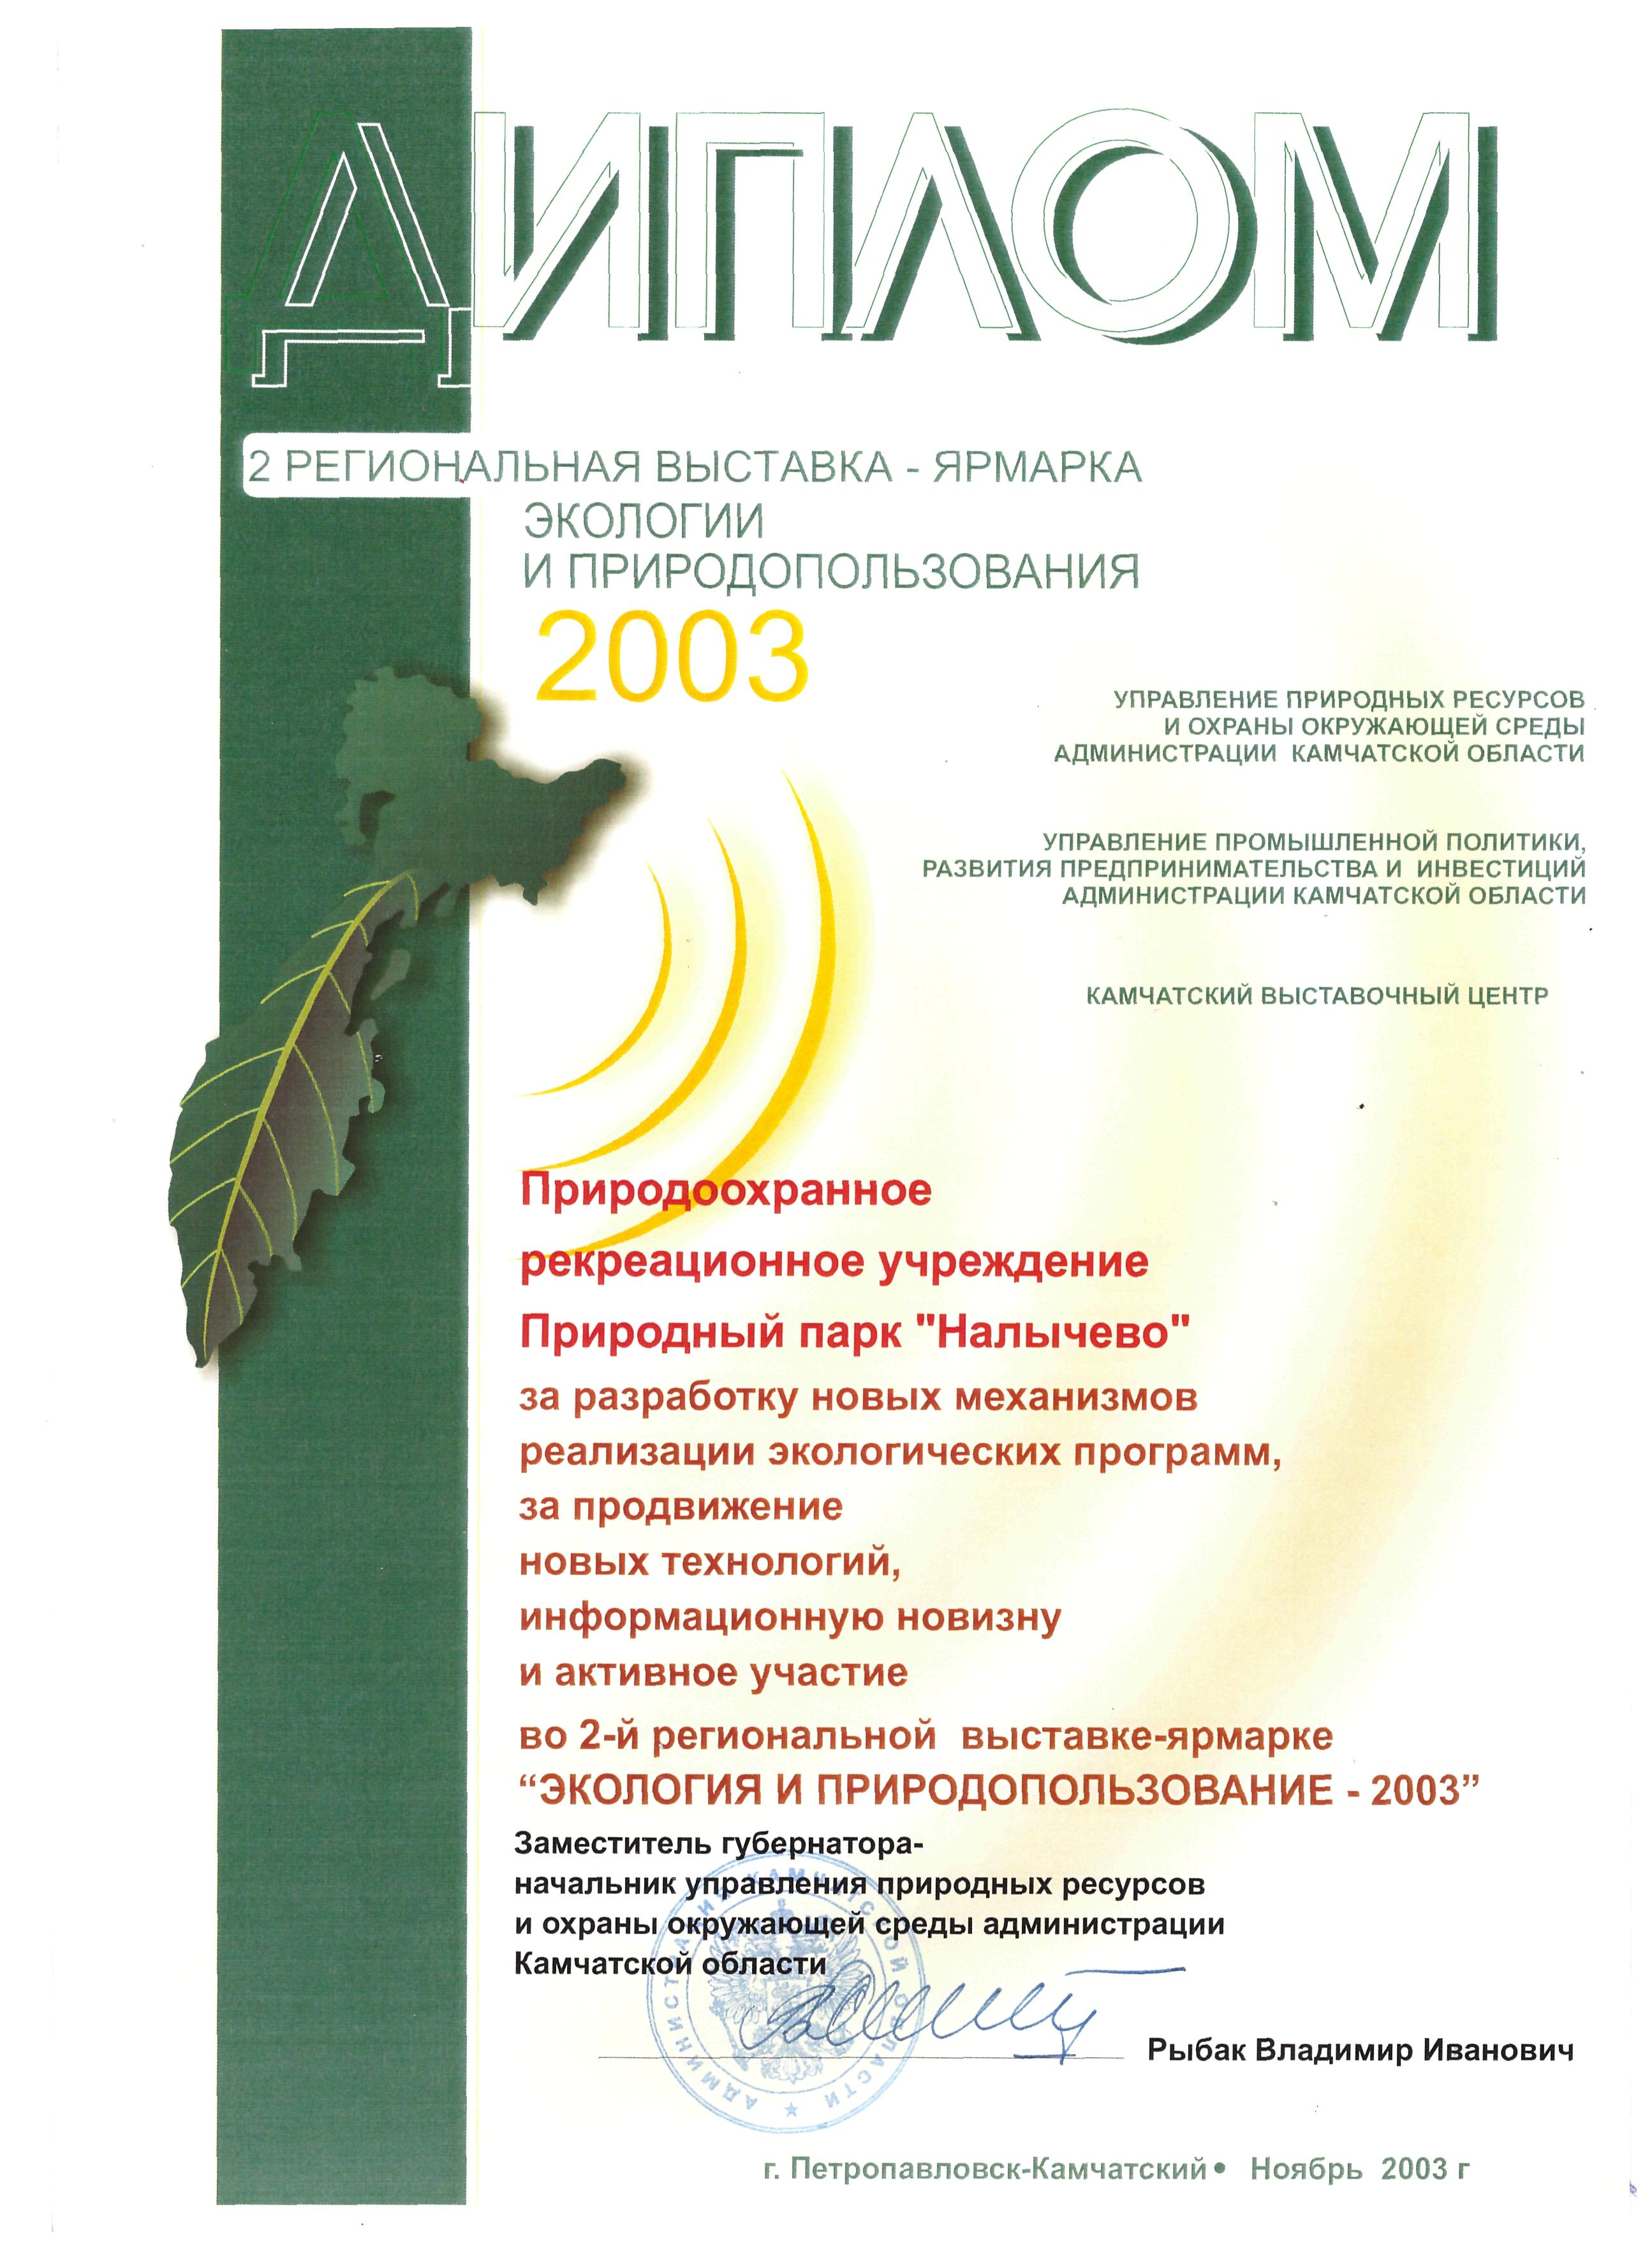 Вторая региональная выставка-ярмарка экологии и природопользования - 2003